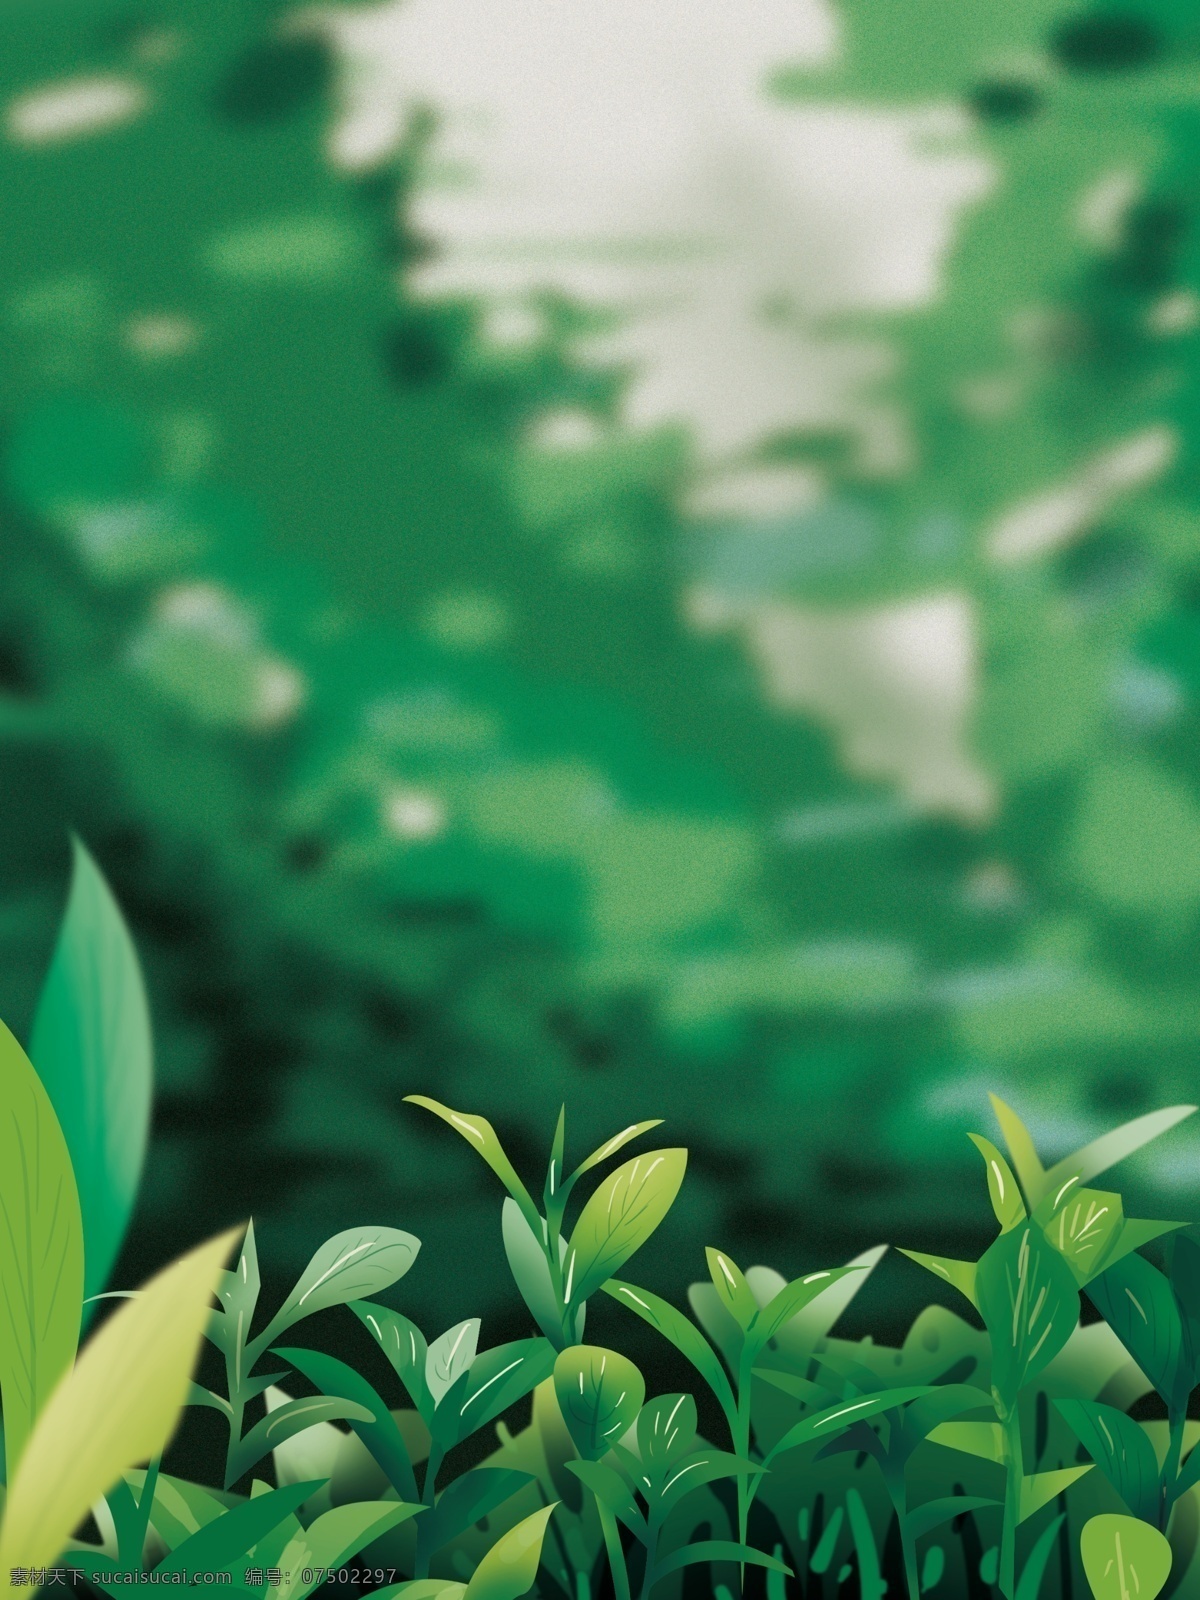 卡通 清新 风 植物 插画 背景 树叶背景 绿色背景 治愈系背景 插画背景 植物背景 唯美 草地背景